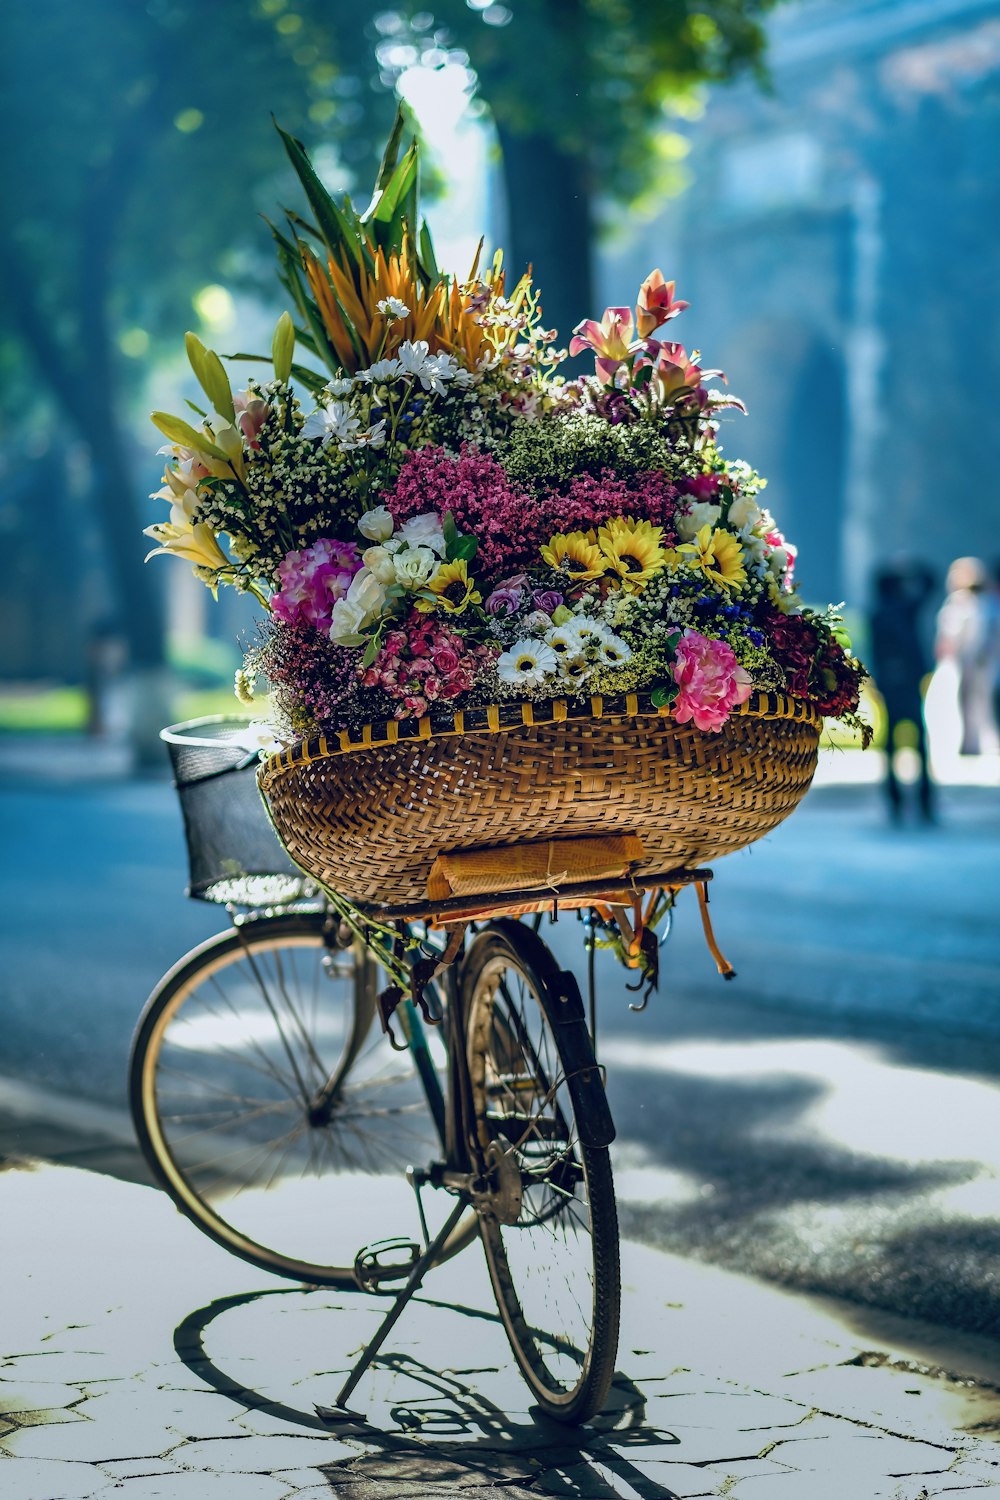 Blumen im braunen geflochtenen Korb auf dem Fahrrad